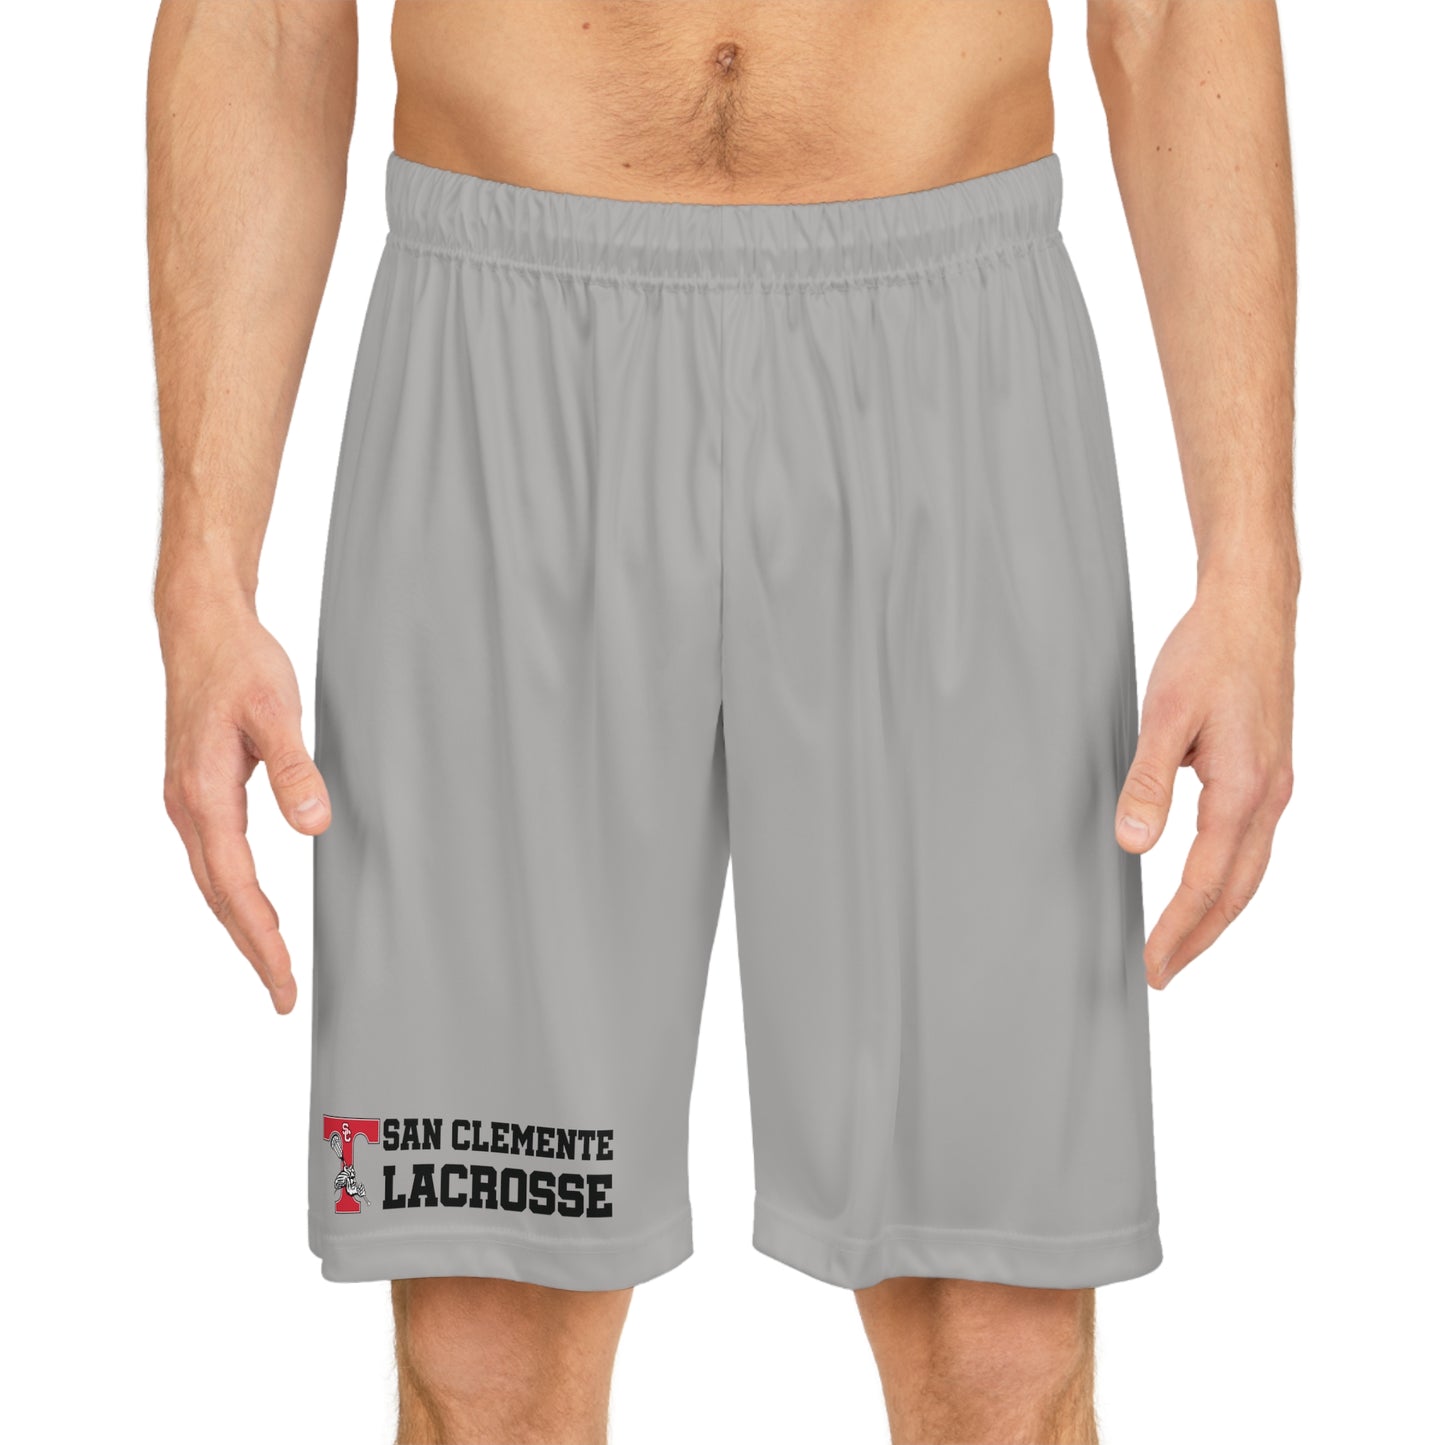 Triton Lacrosse Shorts